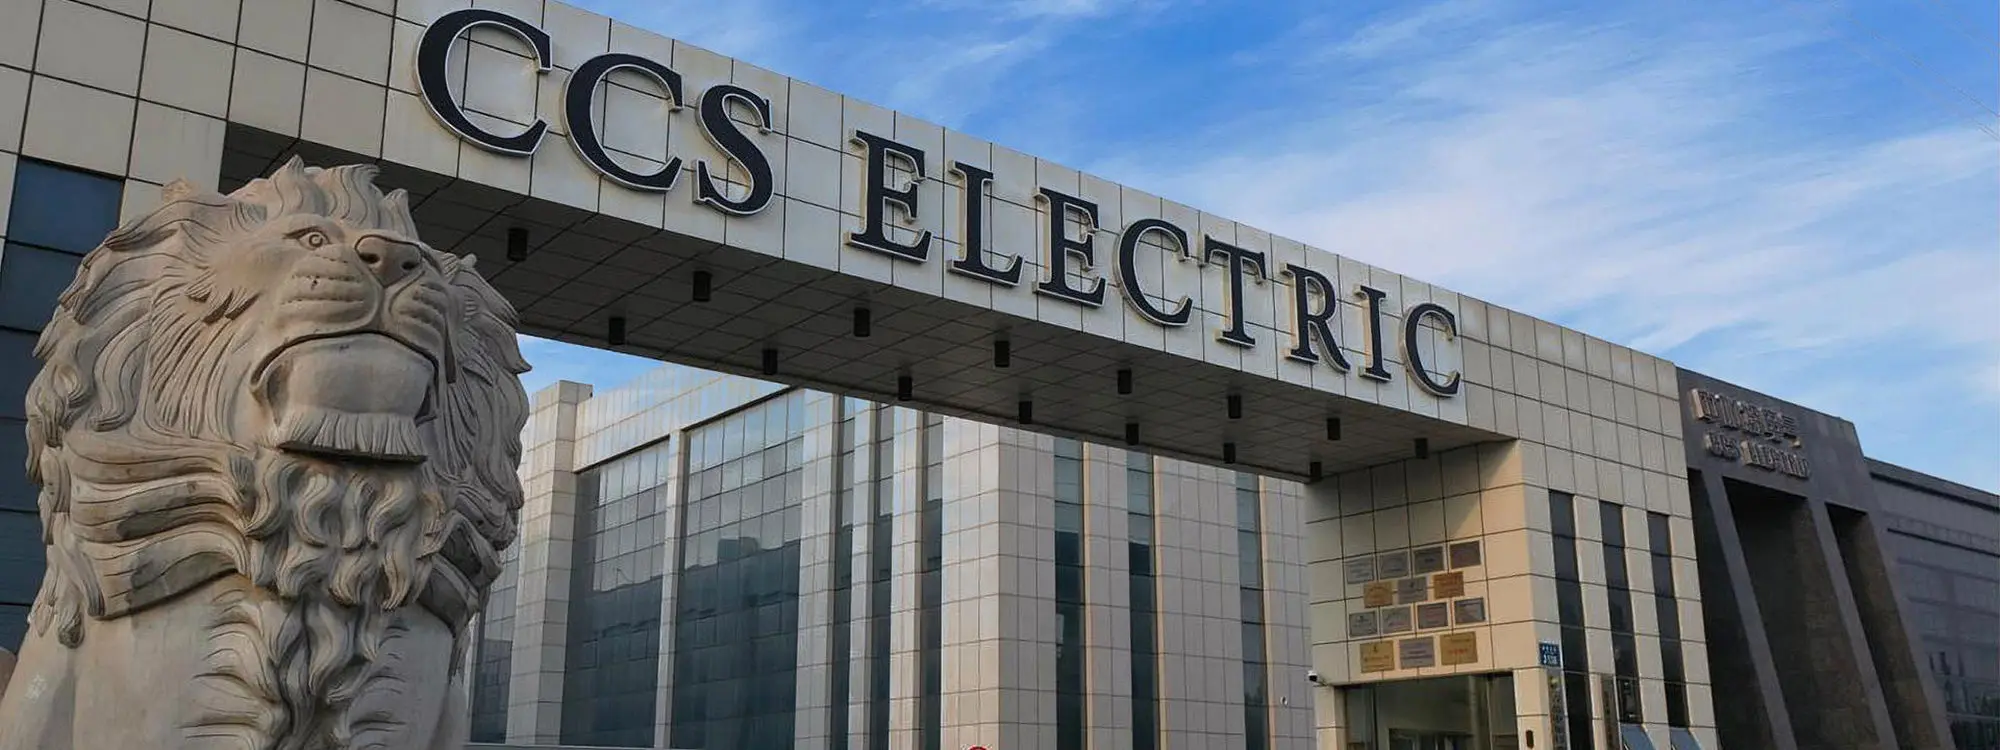 Электротехническое оборудование и электродвигатели Китая для Казахстан и стран СНГ